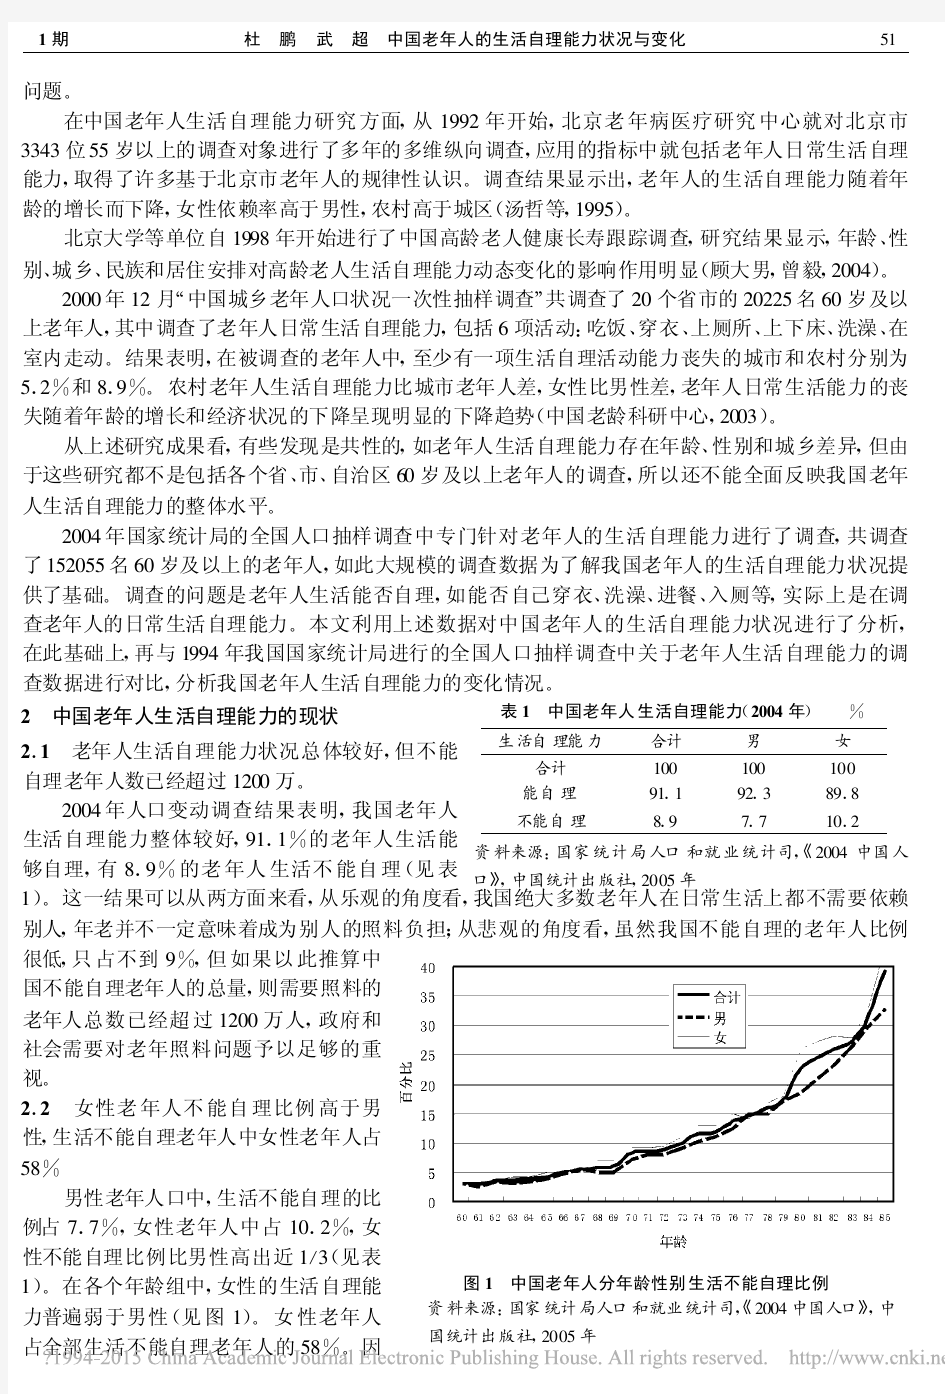 中国老年人的生活自理能力状况与变化_杜鹏